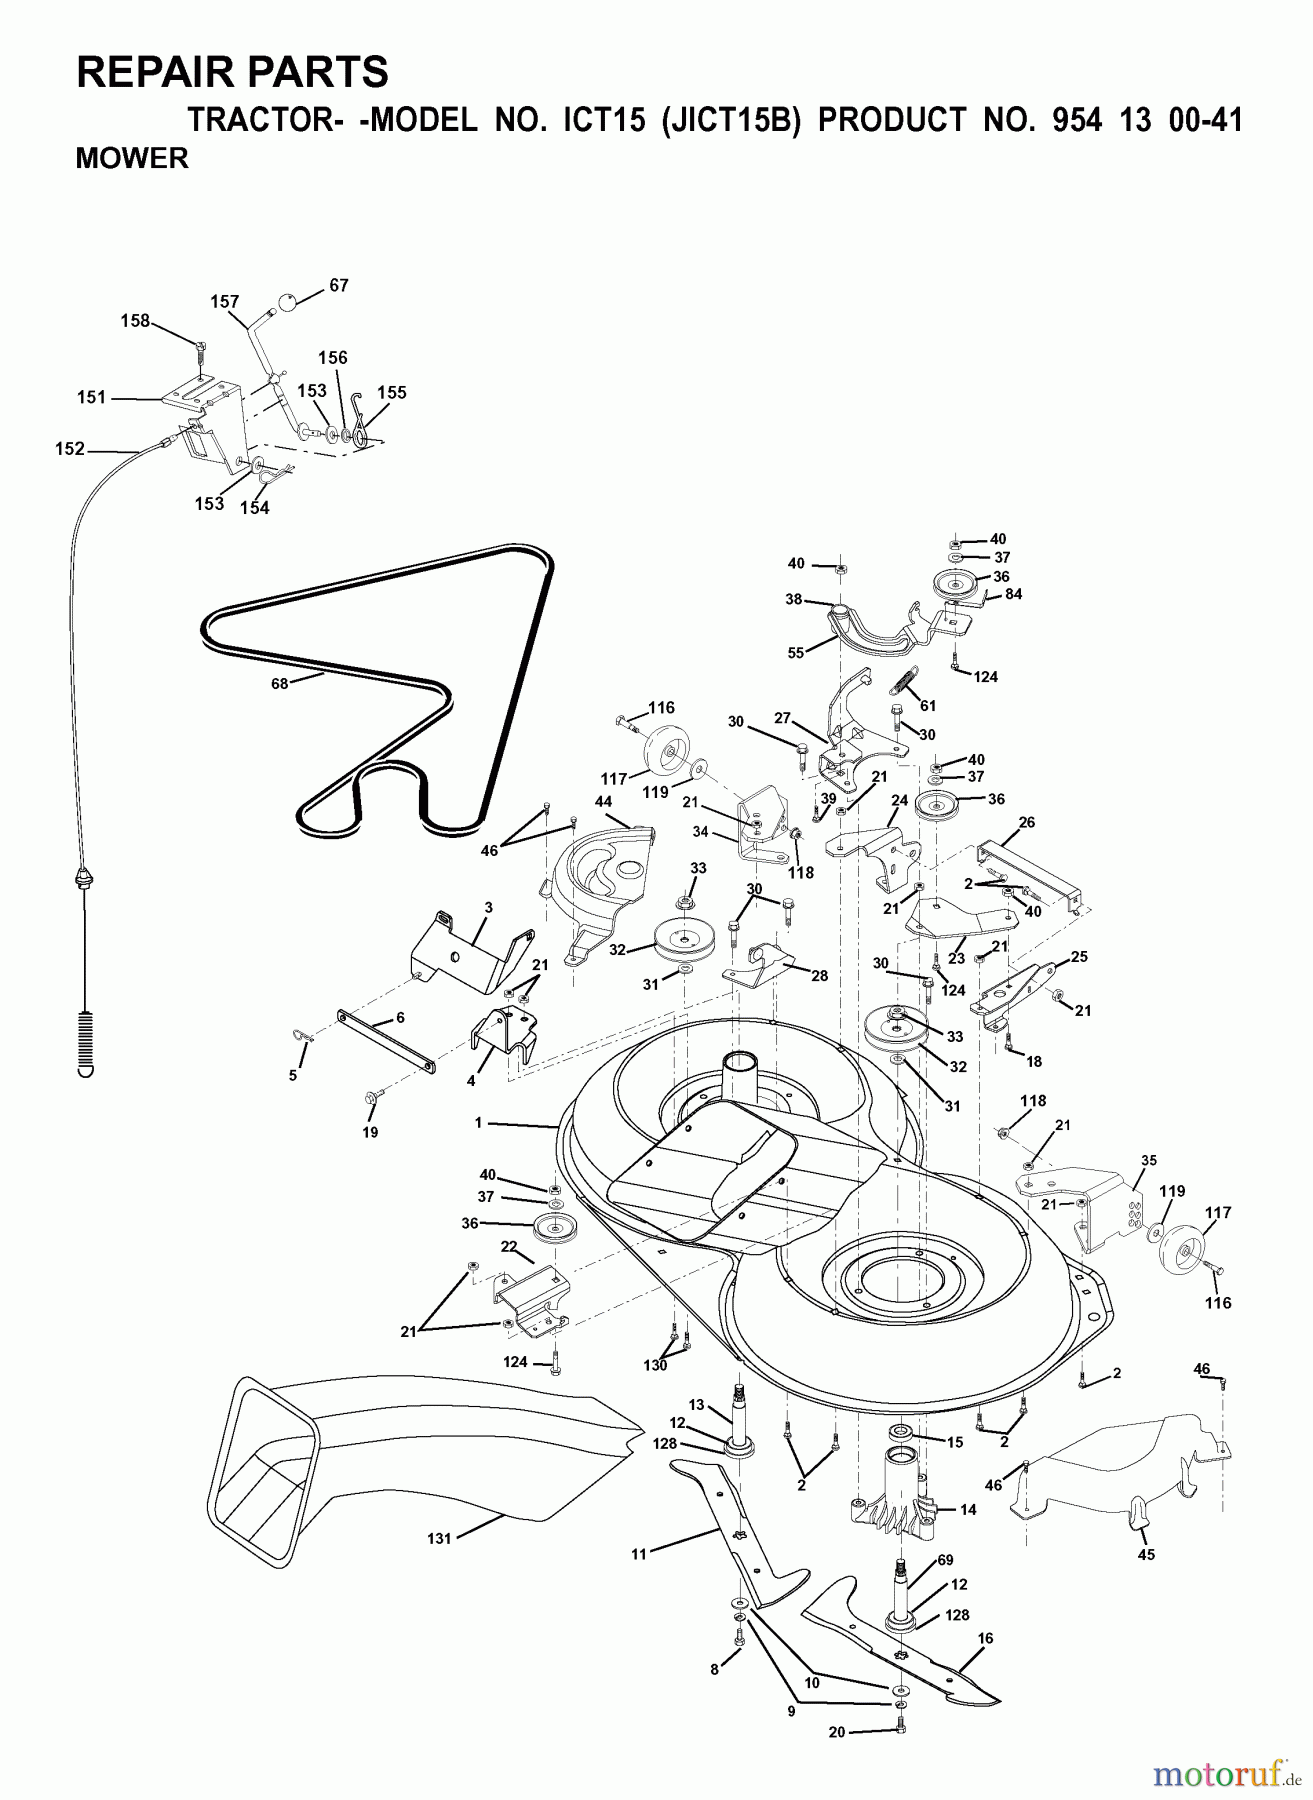  Jonsered Rasen  und Garten Traktoren ICT15 (JICT15B, 954130041) - Jonsered Lawn & Garden Tractor (2000-02) MOWER DECK / CUTTING DECK